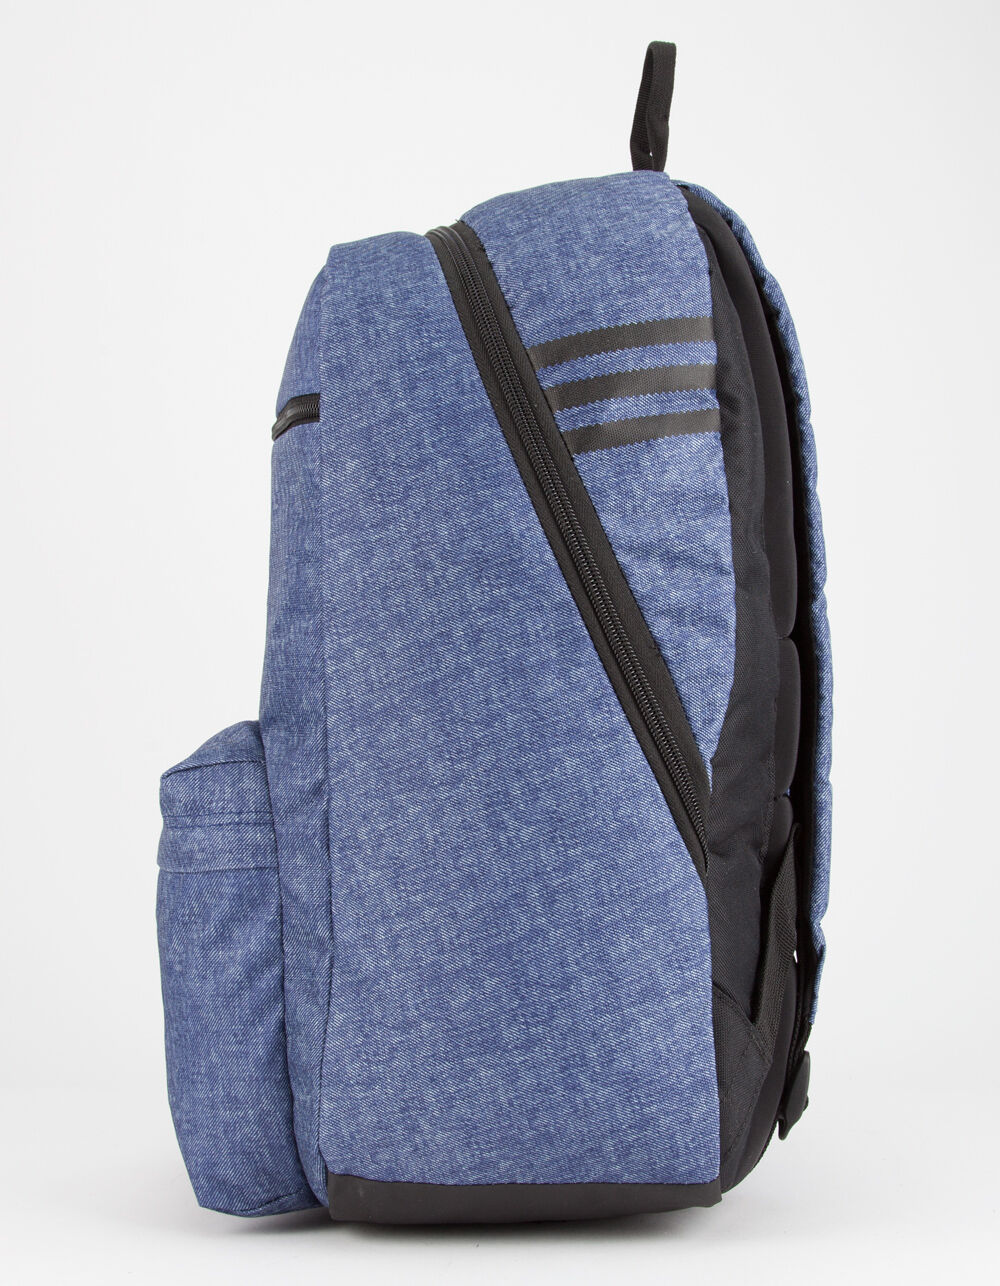 ADIDAS Originals National Blue Denim Backpack image number 2